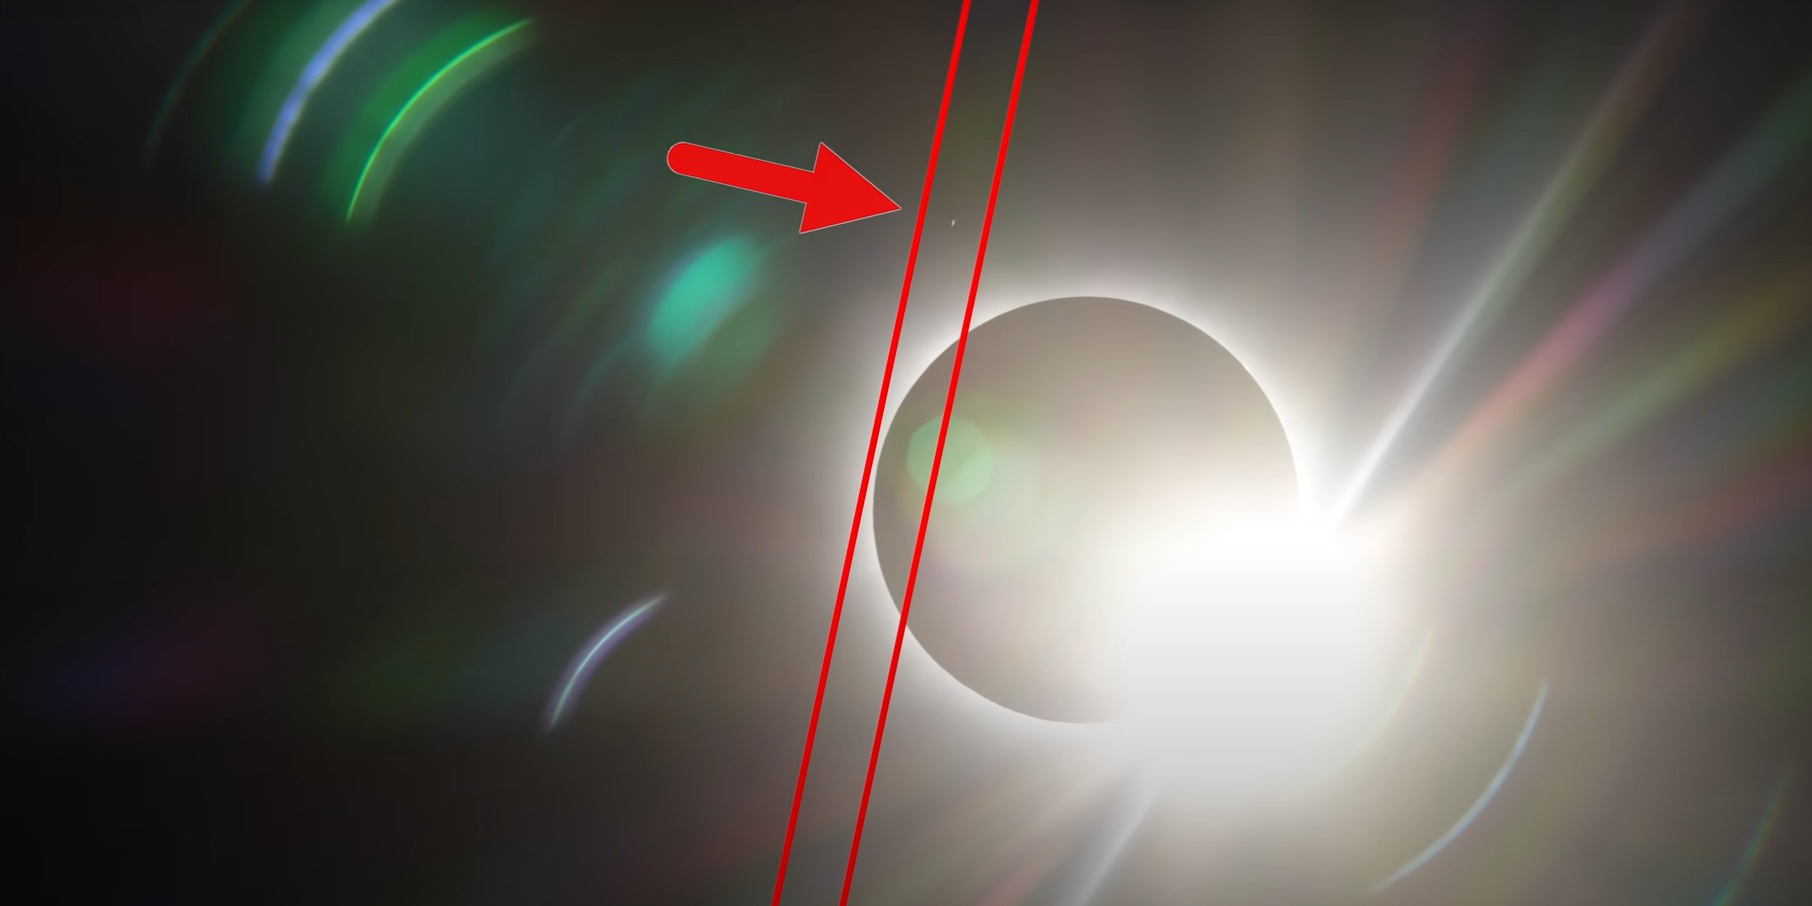 Второй неопознанный объект, замеченный около дисков Луны и Солнца во время затмения 8 апреля.